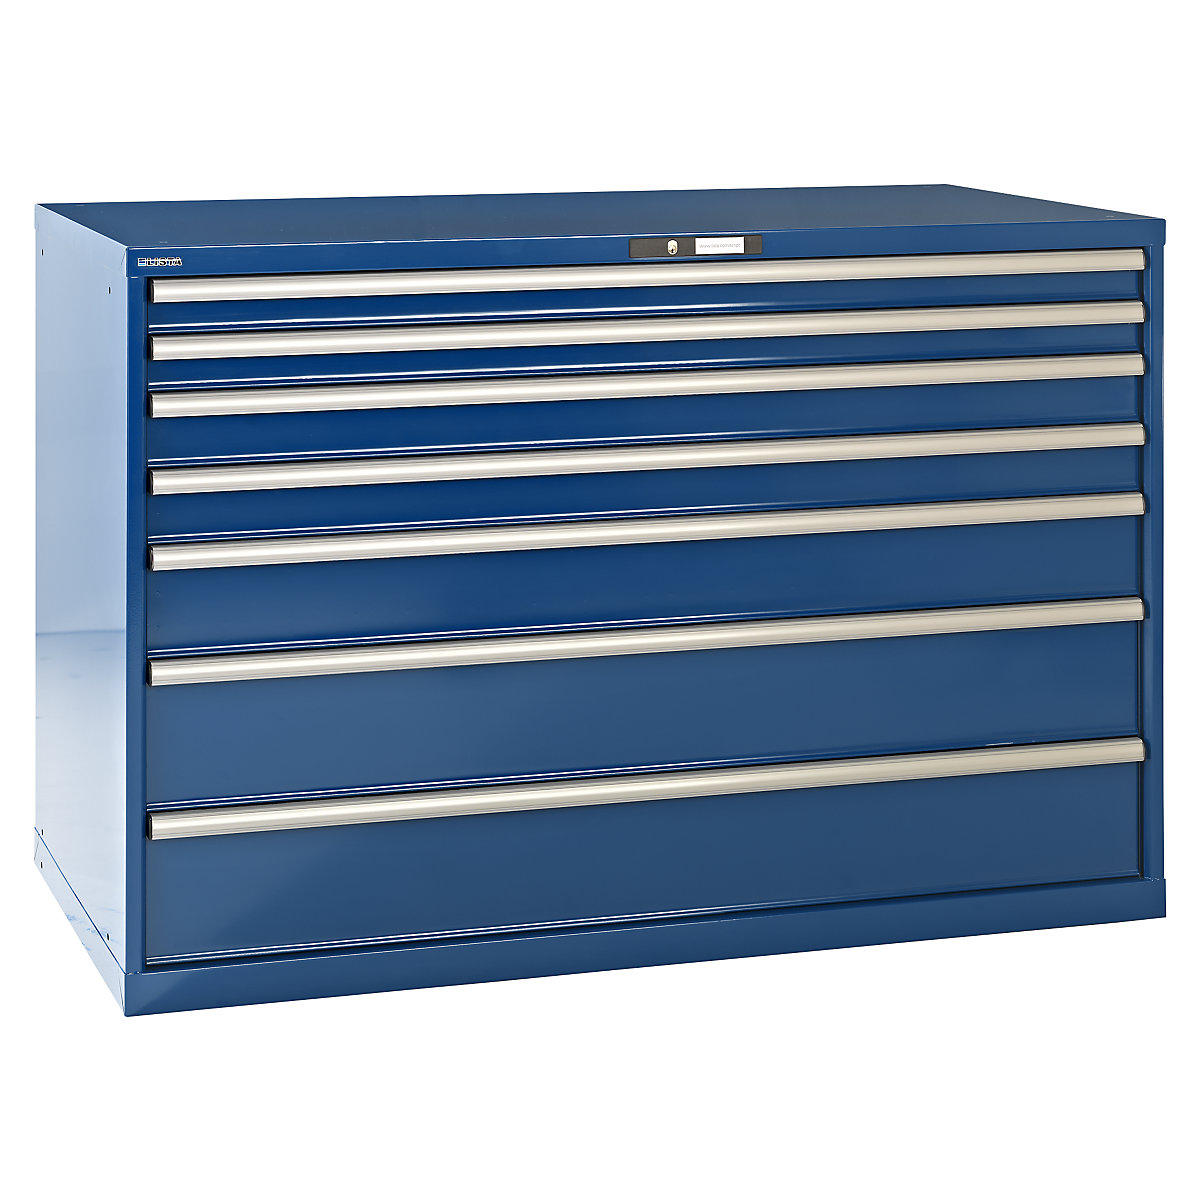 LISTA – Armoire à tiroirs en tôle d'acier, h x l 1000 x 1431 mm, 7 tiroirs, charge max. 200 kg, bleu gentiane